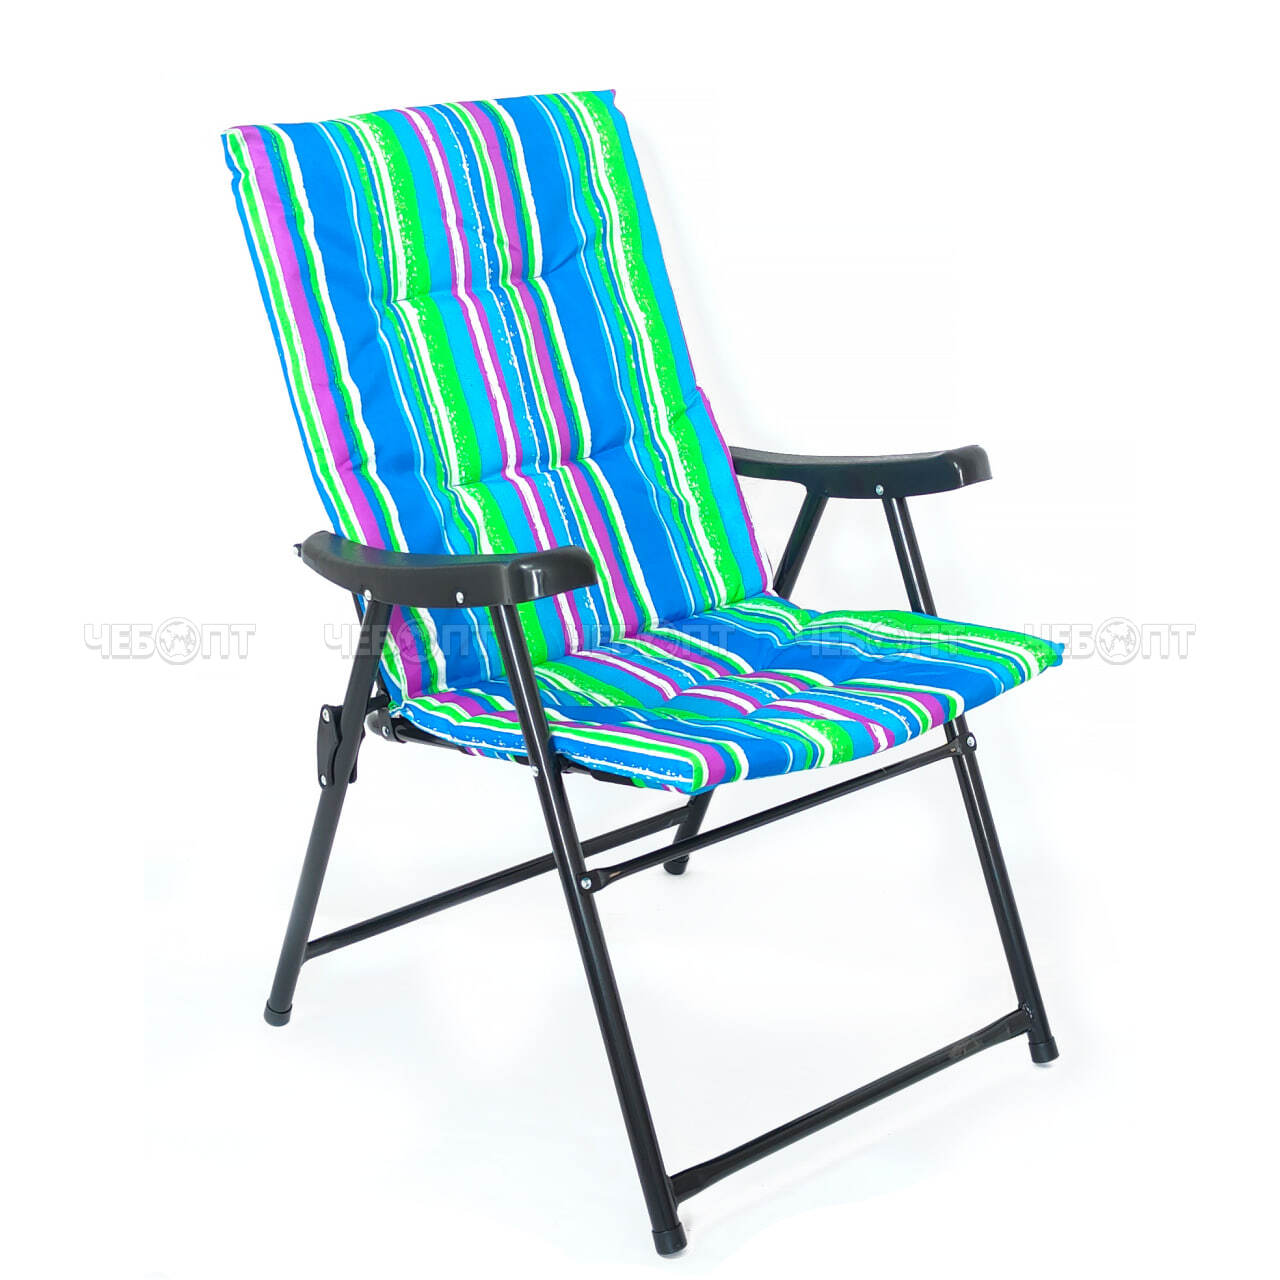 Кресло - складное 520*600*900 мм мягкое, хлопчатобумажная ткань, нагрузка до 120 кг, цвета в ассортименте арт. HY-8026, 290023 $ [6] GOODSEE. ЧЕБОПТ.